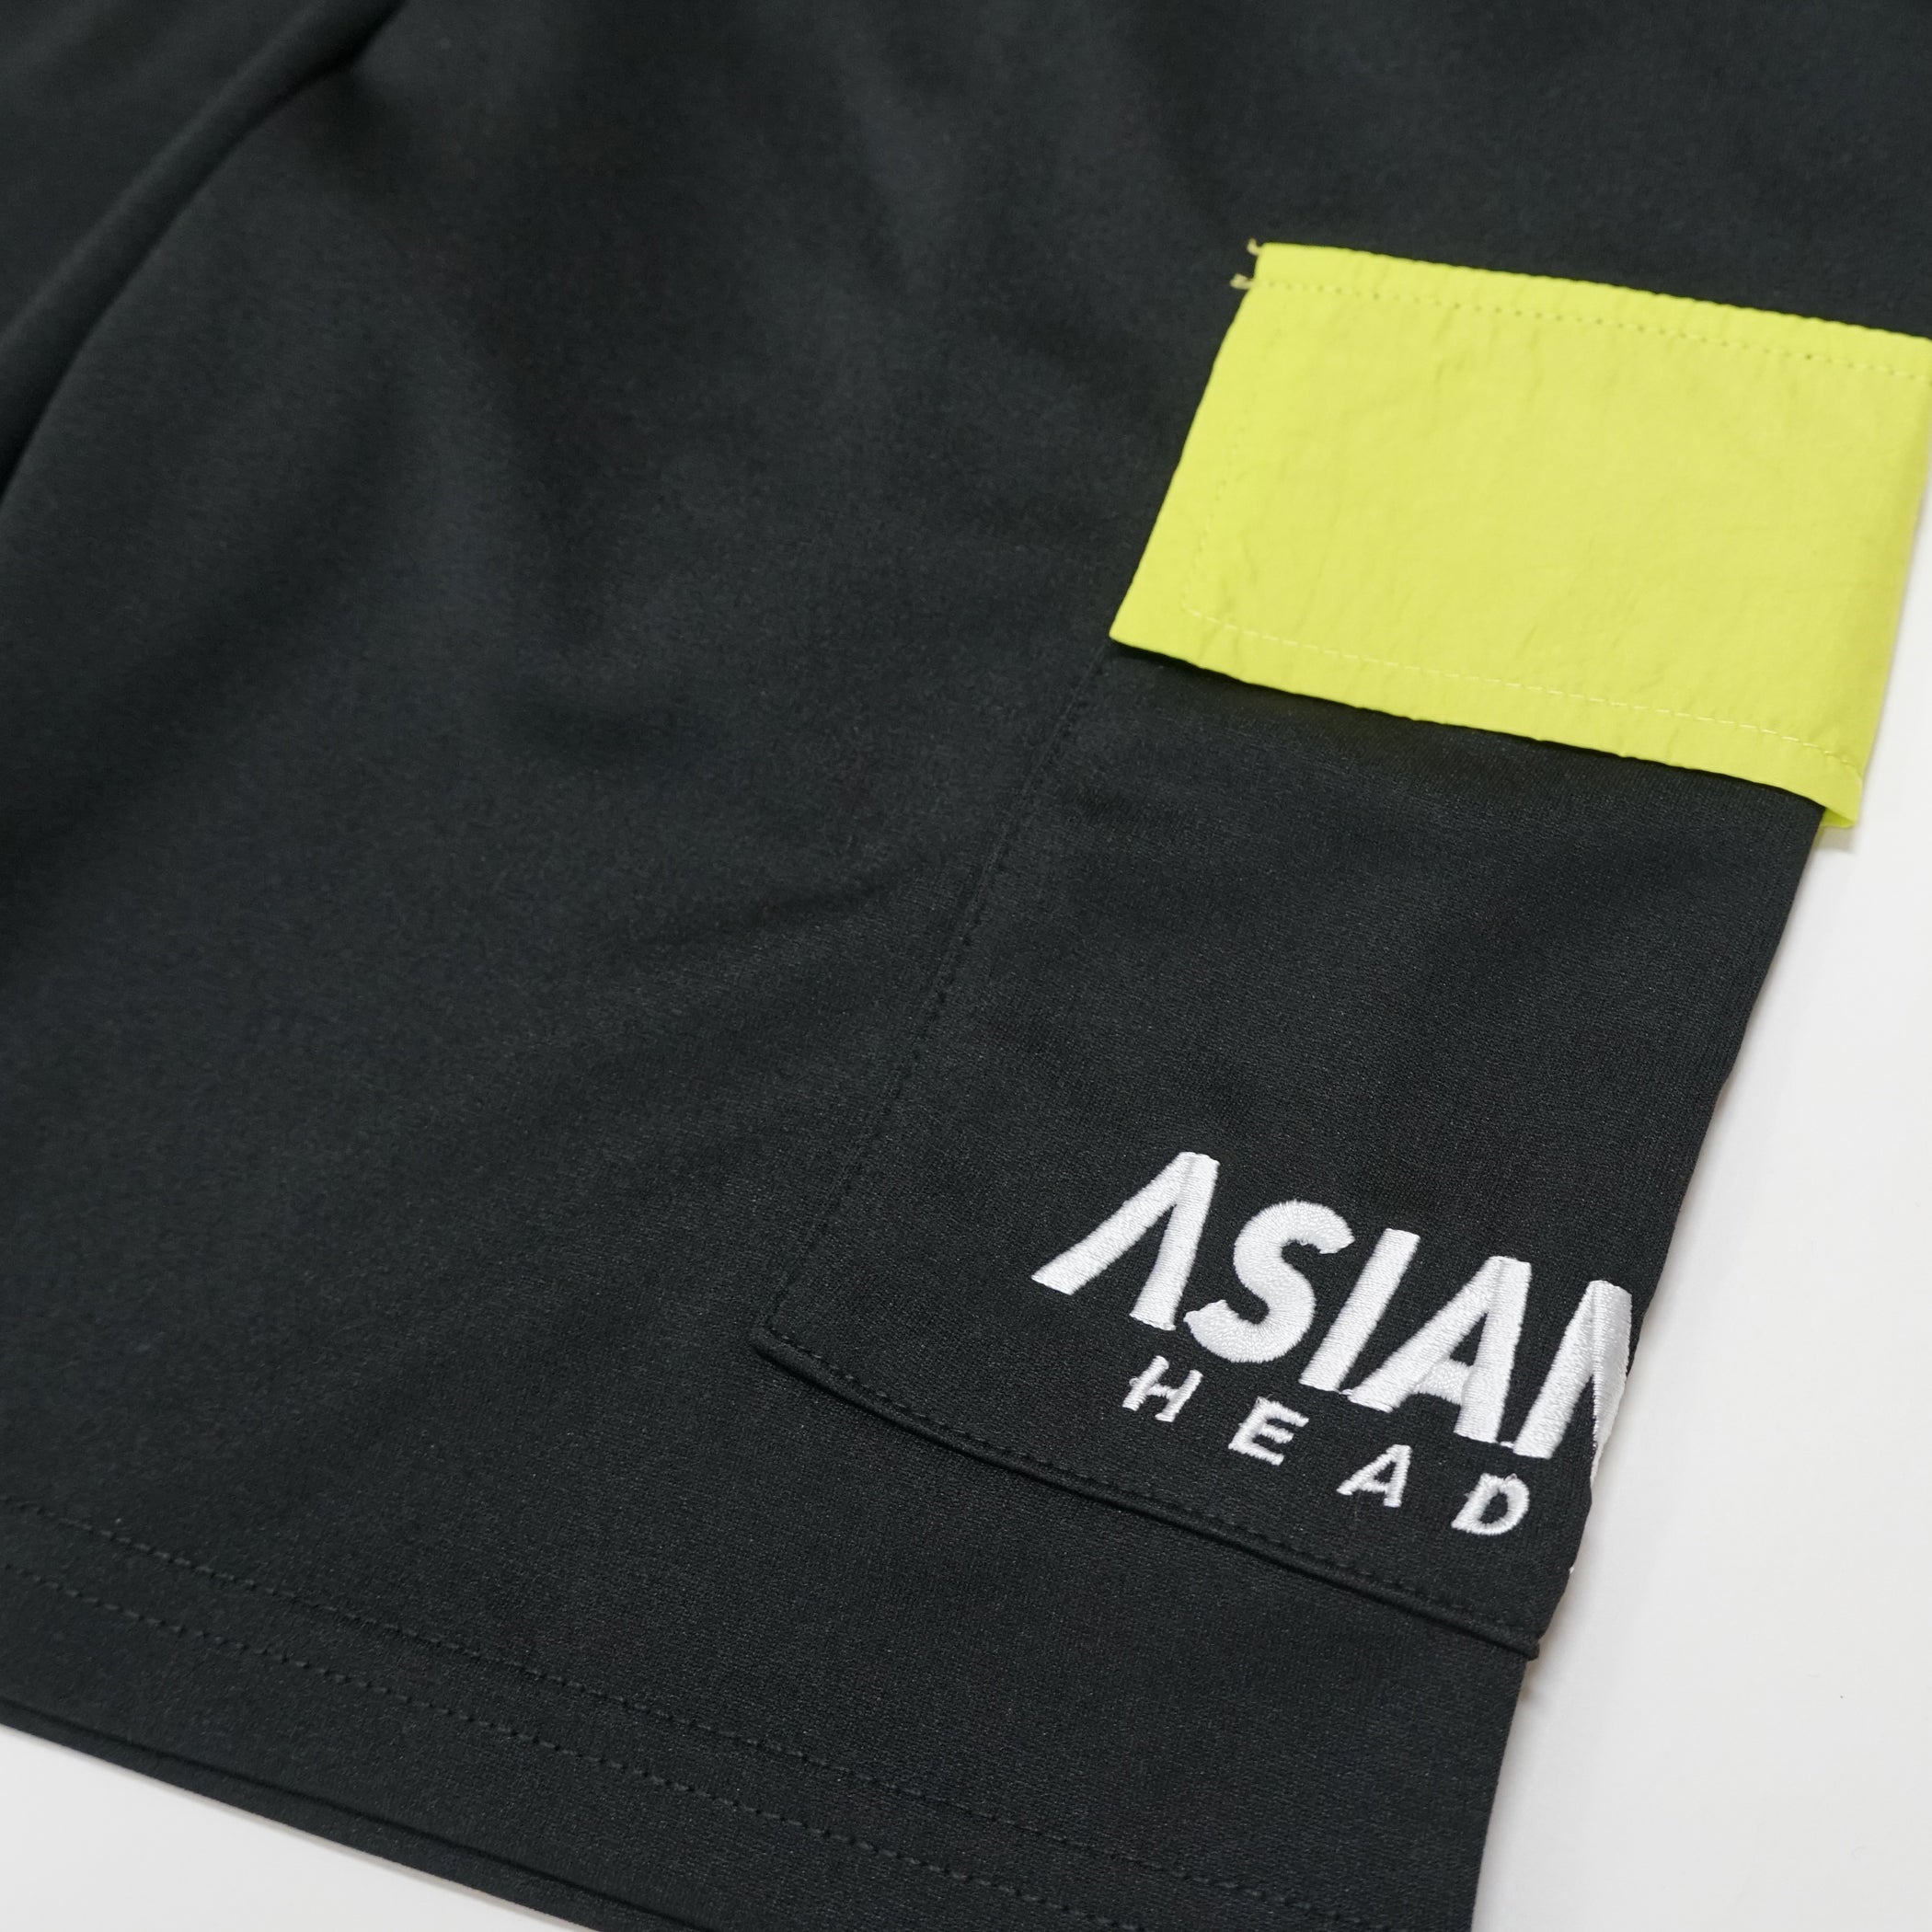 (セール商品) ASIANZ HEAD2 サイドポケットハーフパンツ